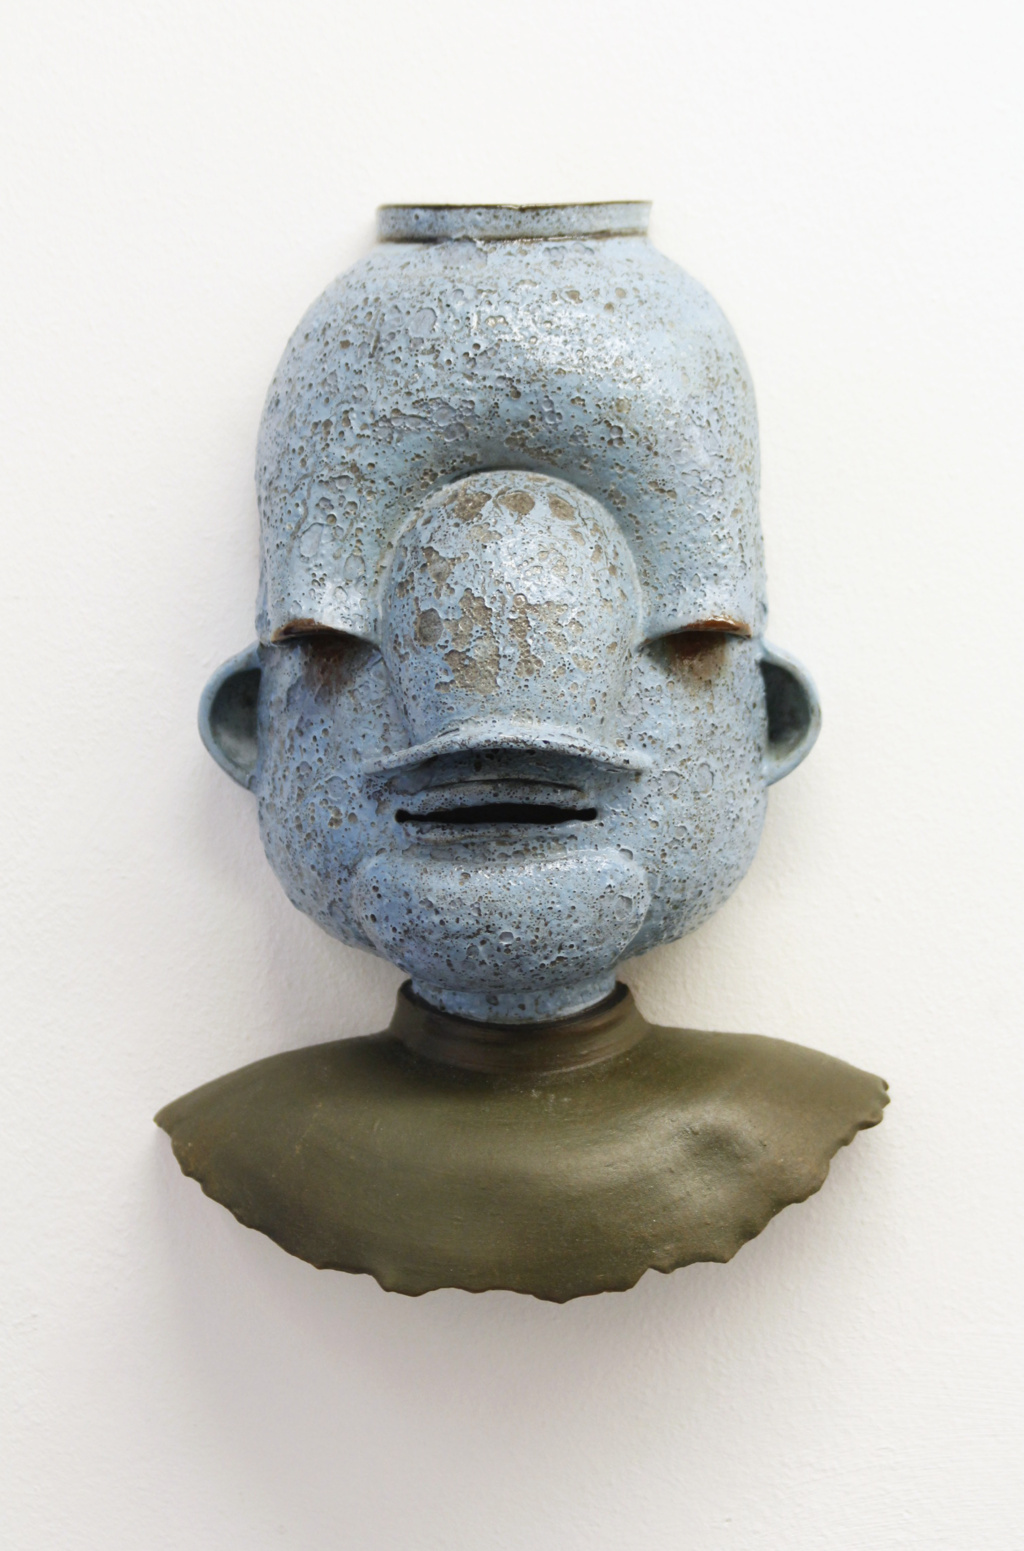 Gabi Hamm, Untitled #15, 2017-2020
Glazed clay
Height 26 cm